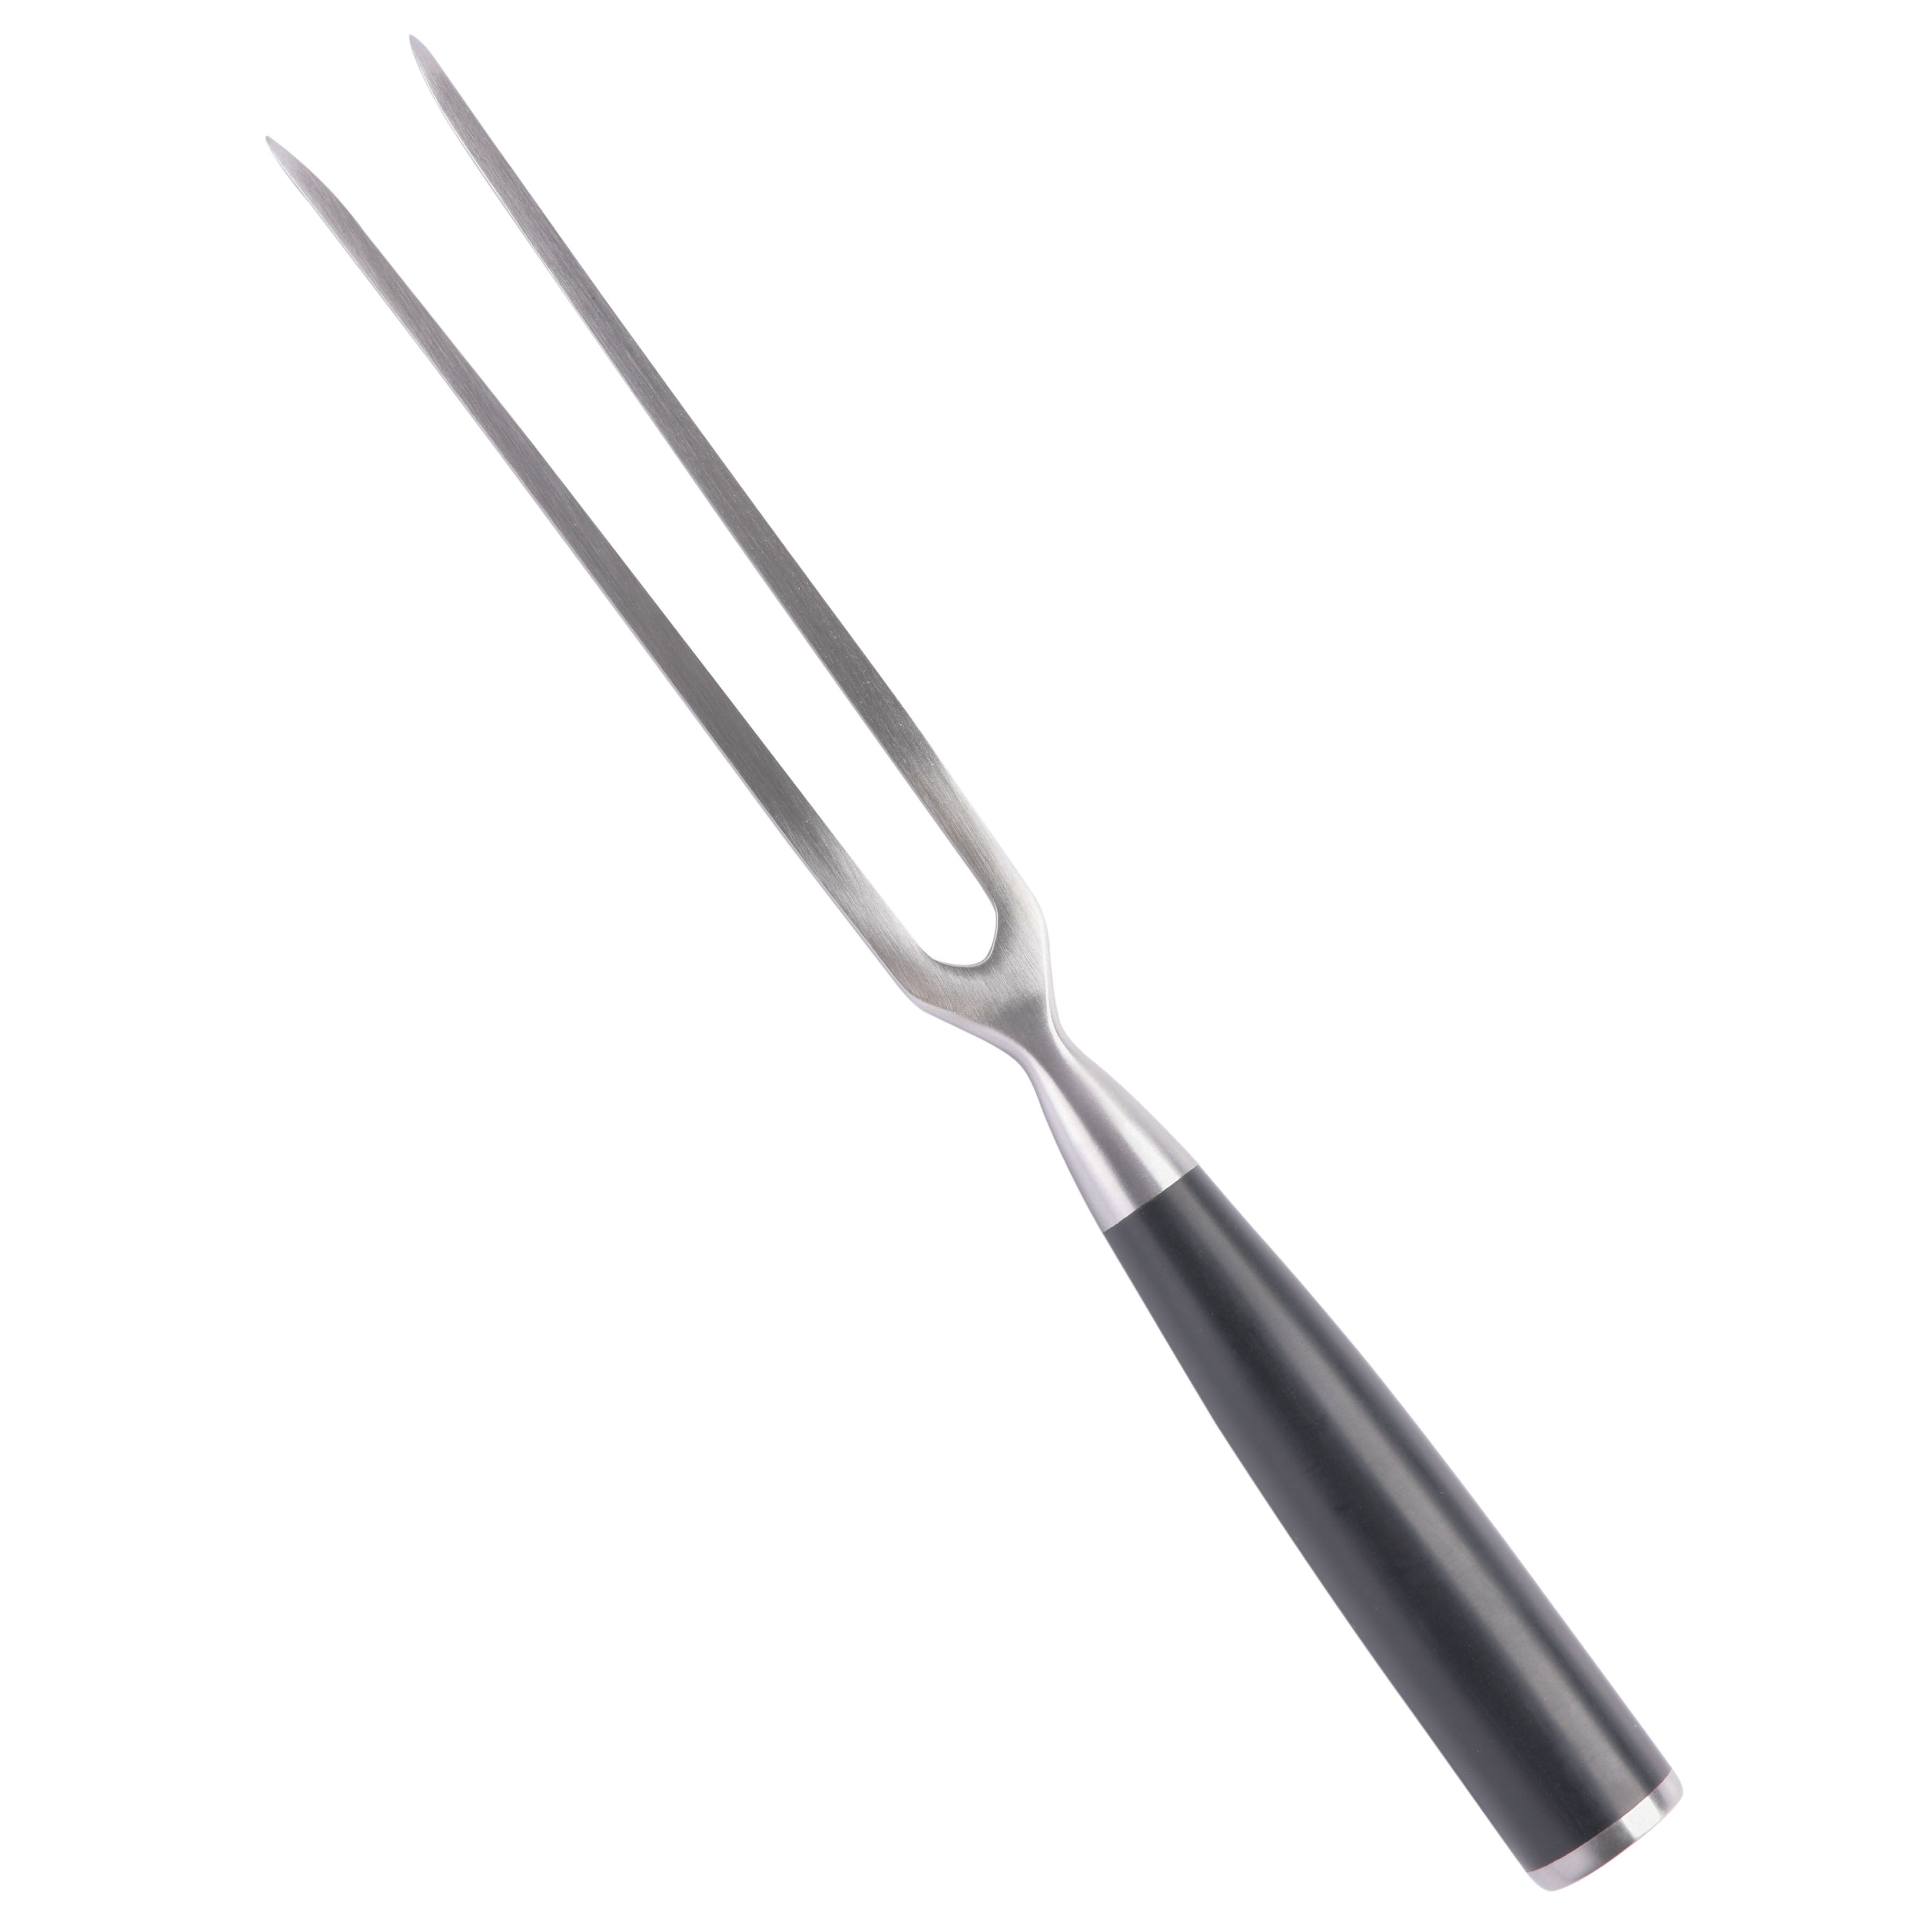 Babish 6.5 In. German Steel Santoku Knife, Cutlery, Household